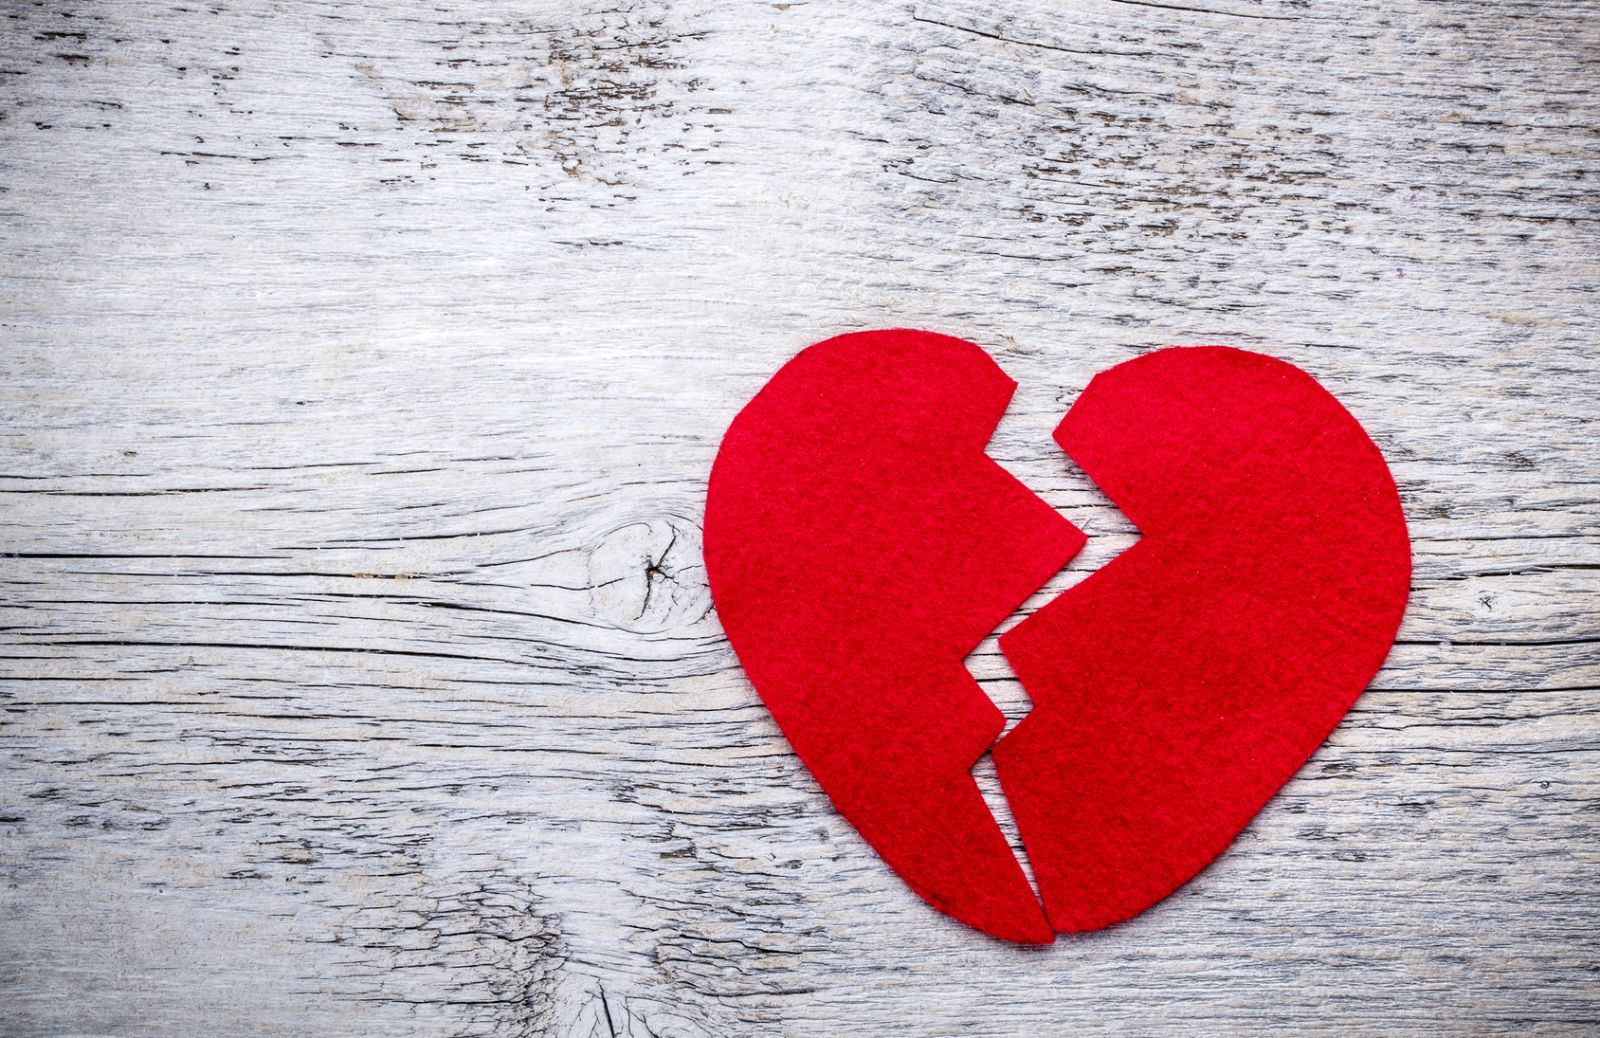 Come le emozioni influenzano la salute del cuore